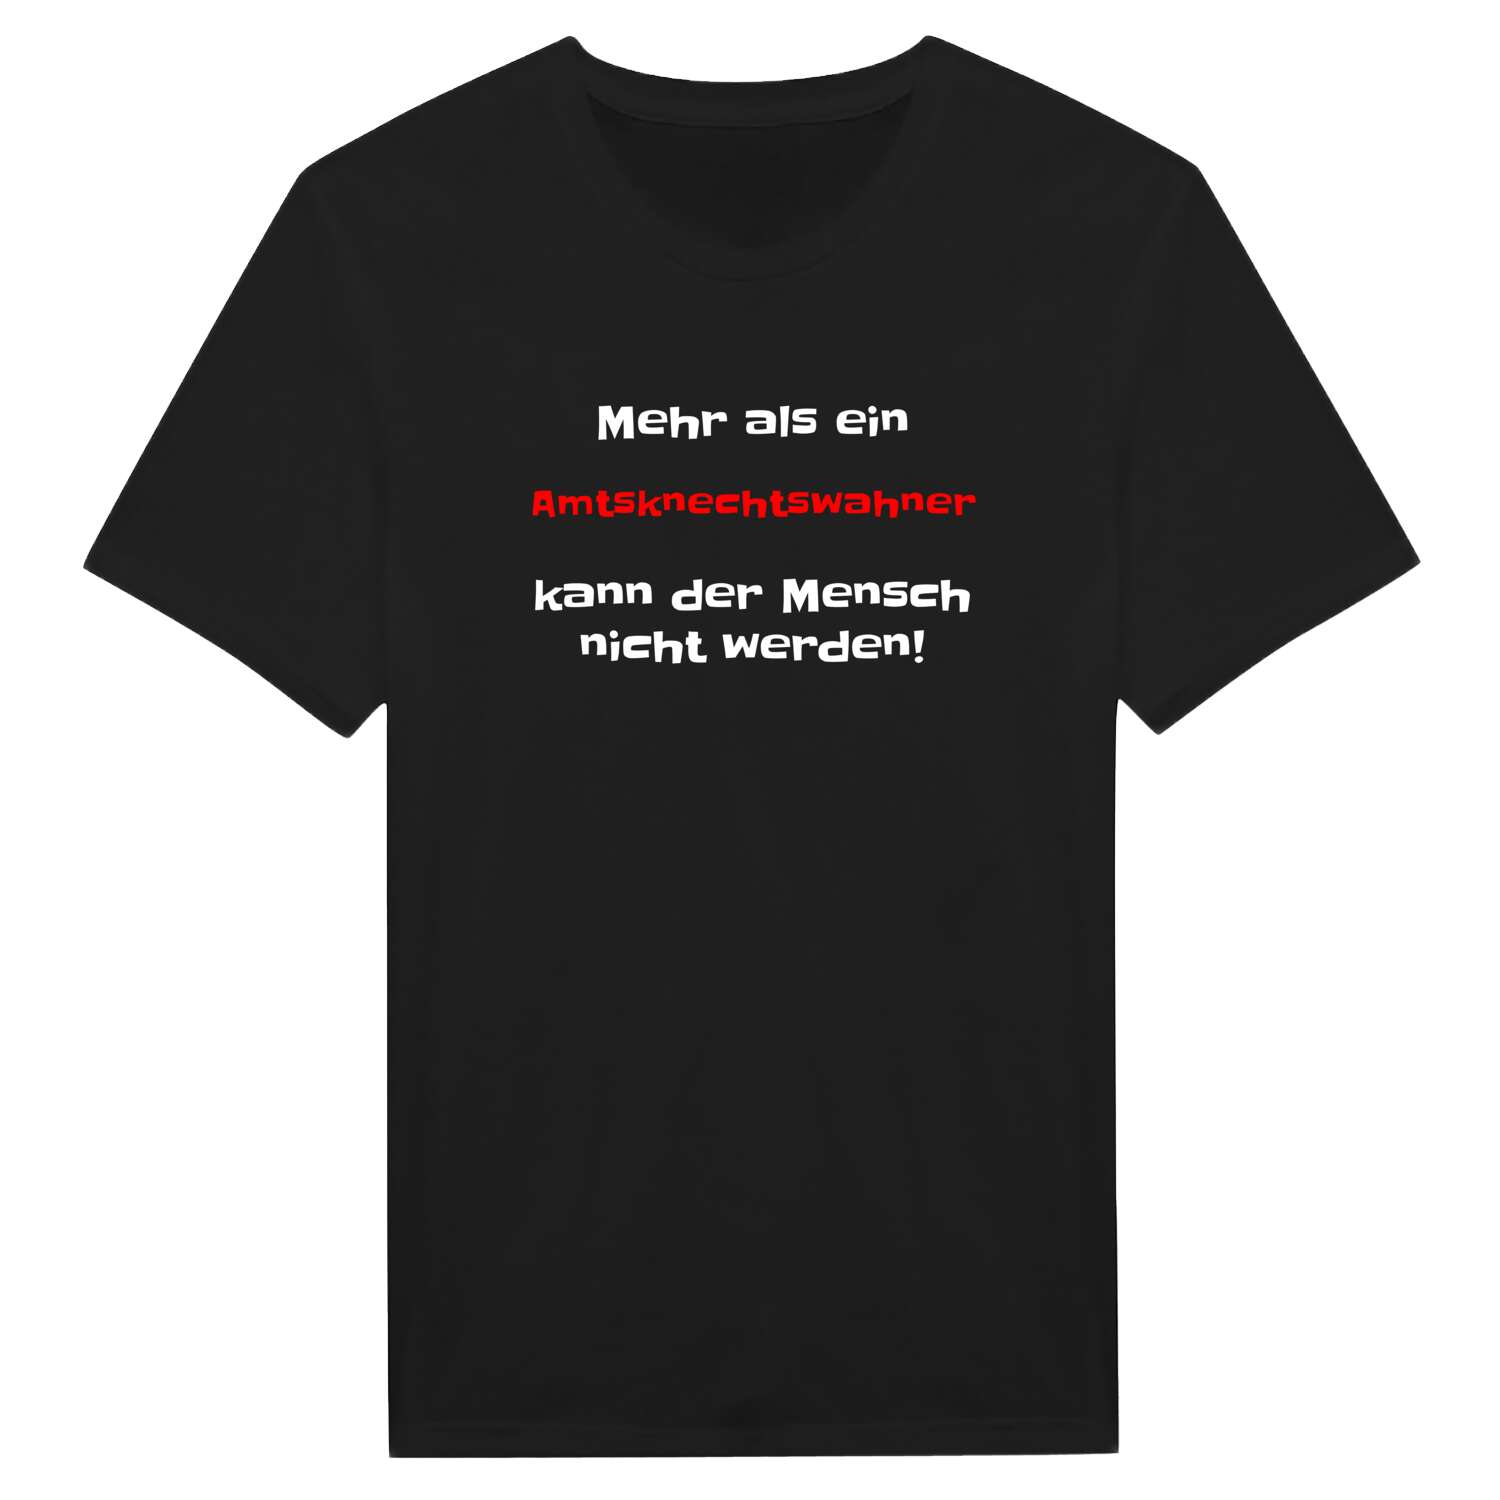 Amtsknechtswahn T-Shirt »Mehr als ein«